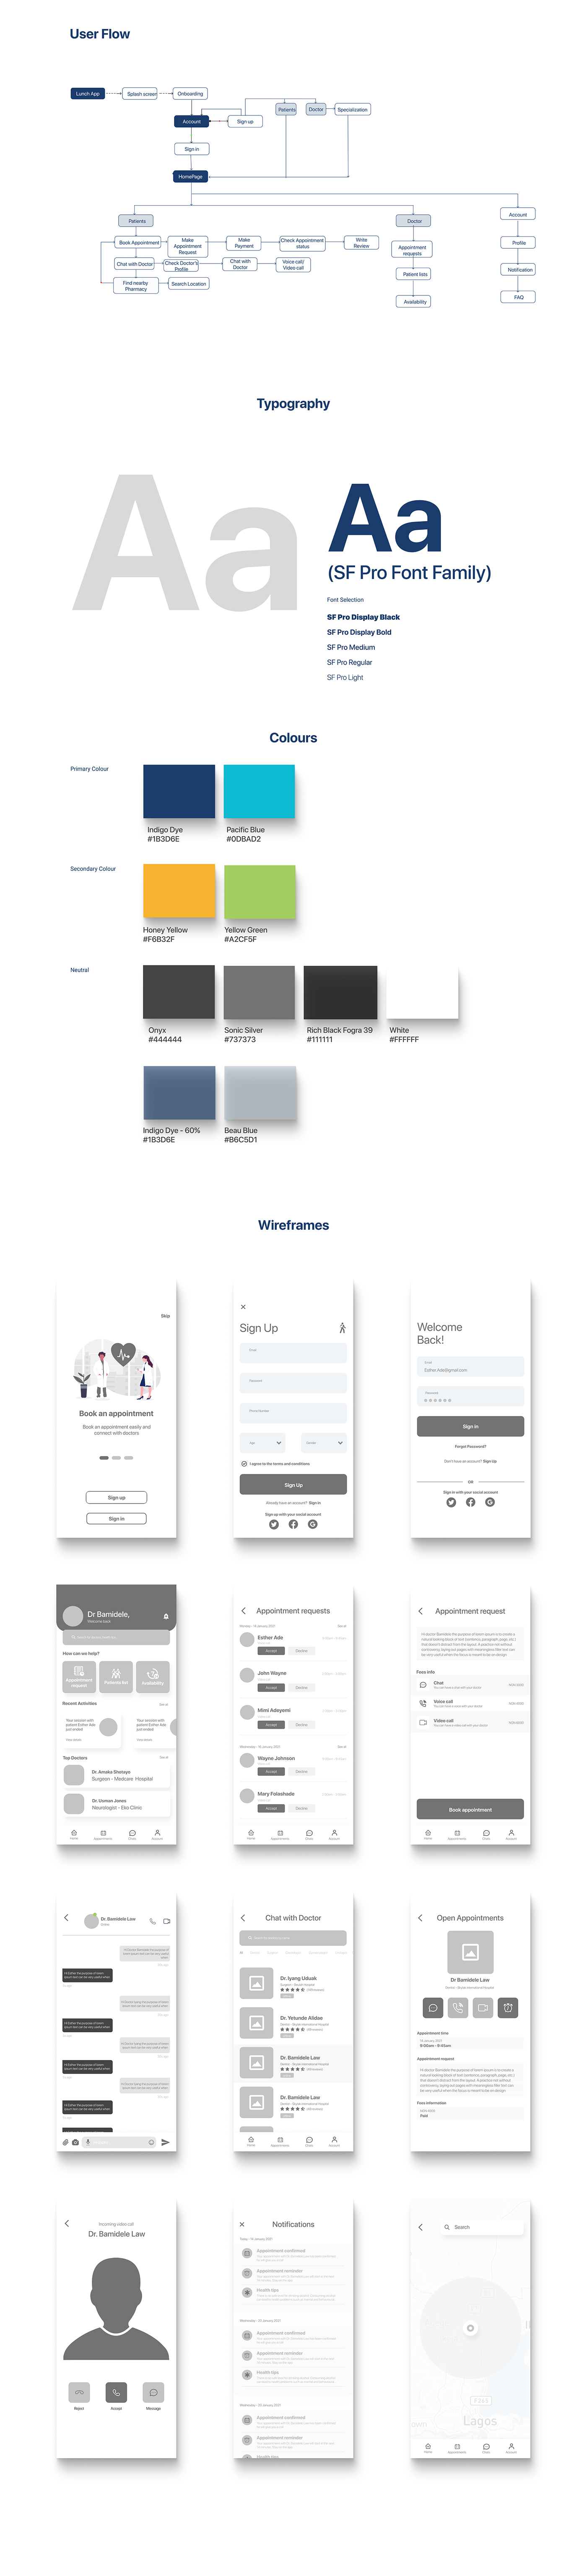 app design Case Study design Figma Mobile app Project telehealth TELEMEDICINE User Experience Design user interface design